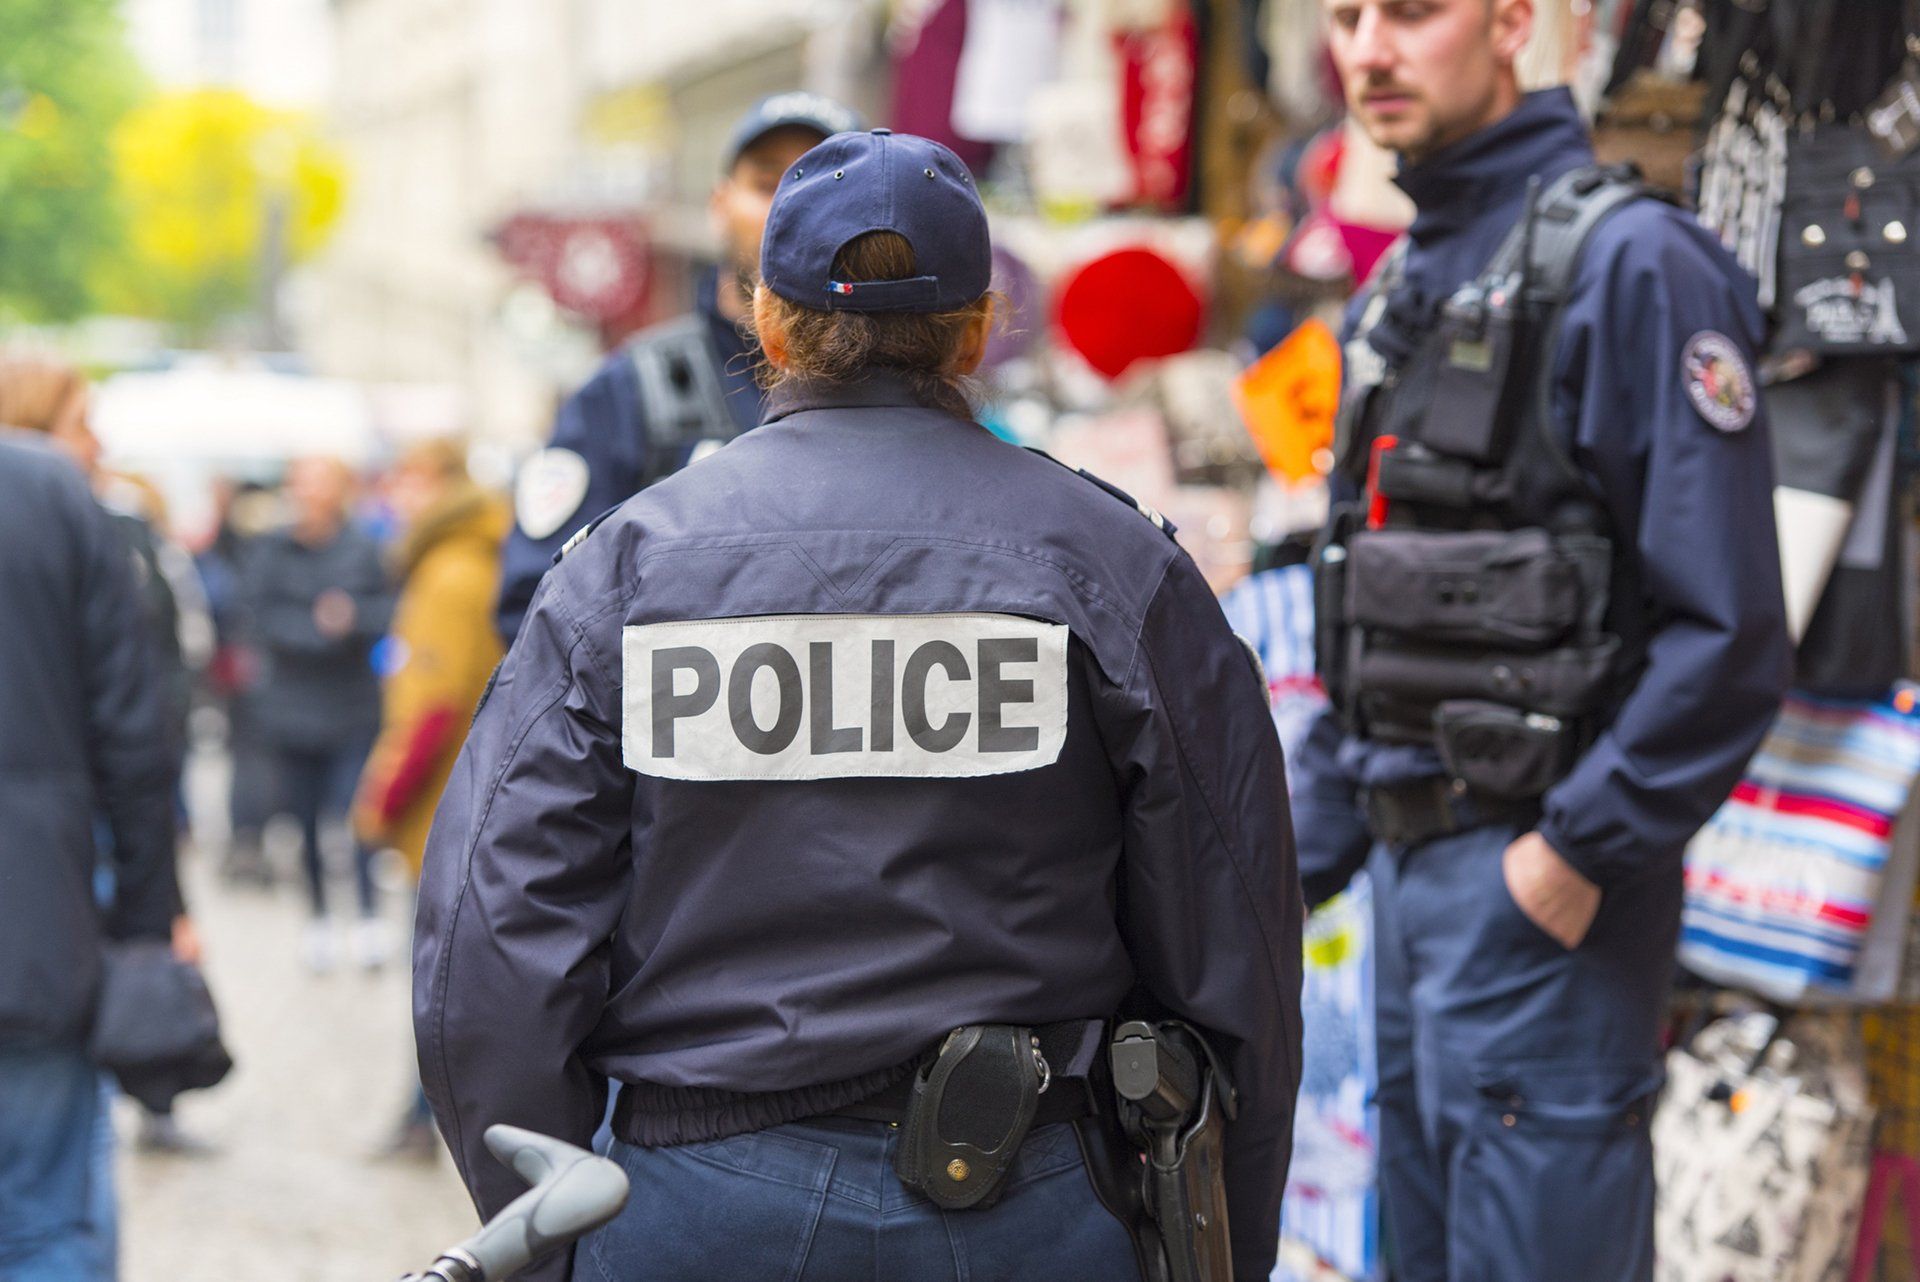 Policemen patrolling at market